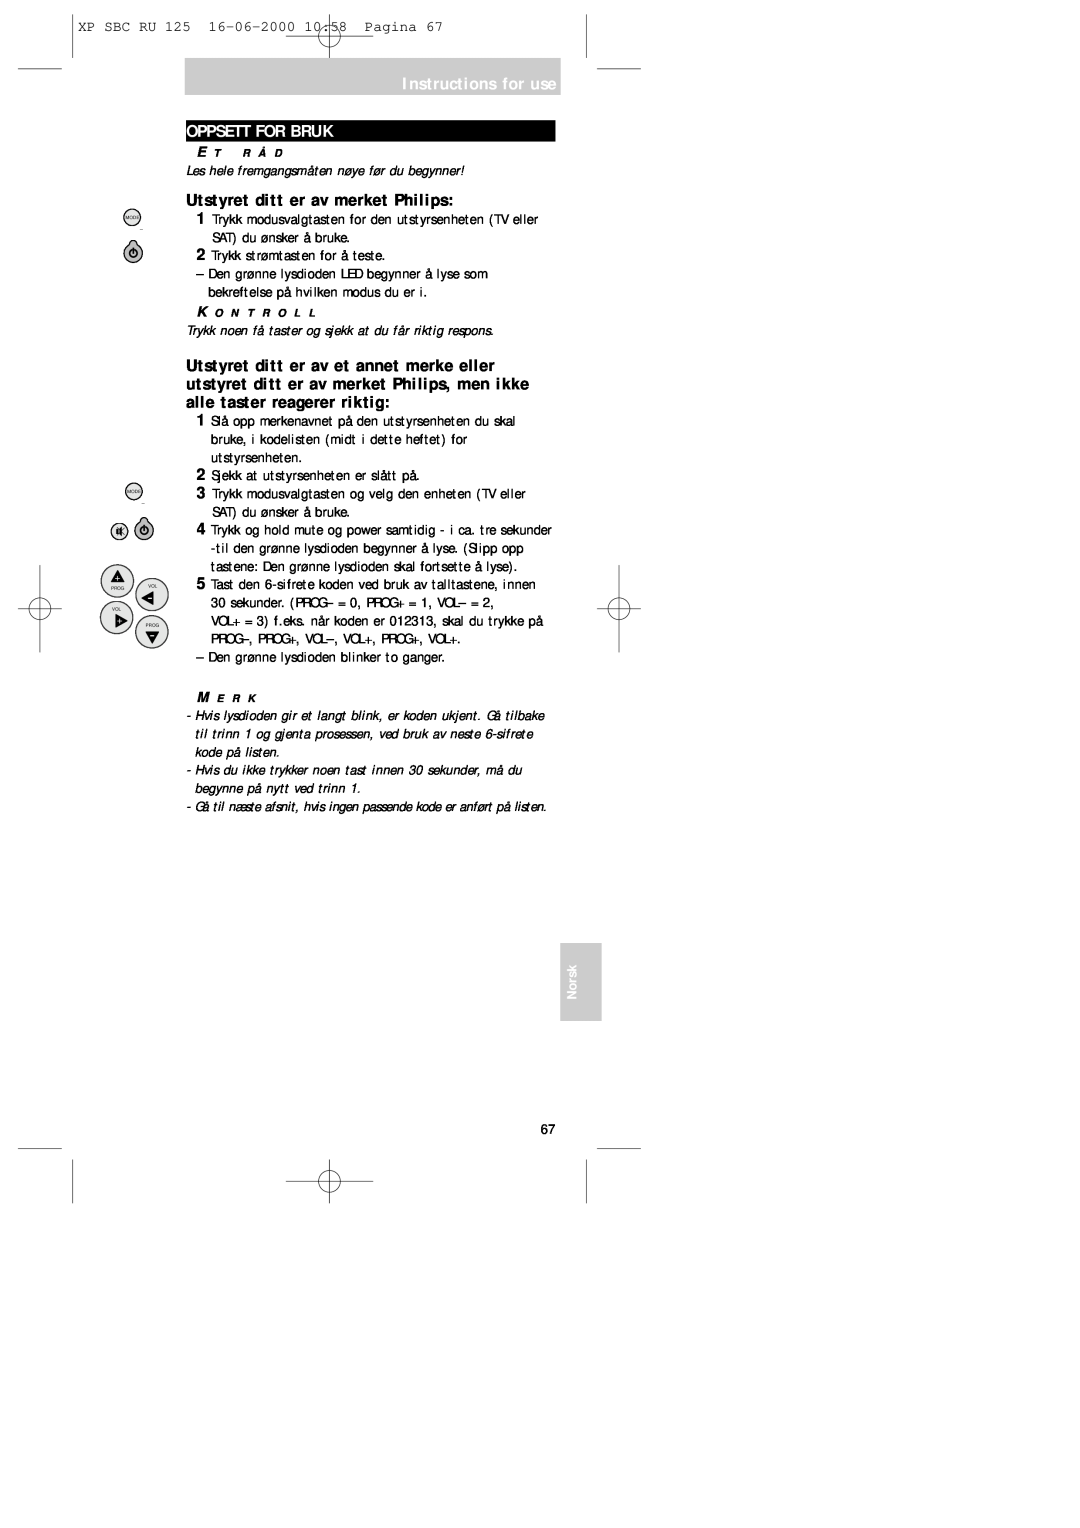 Philips RU125 manual Instructions for use OPPSETT FOR BRUK, Utstyret ditt er av merket Philips, Norsk 